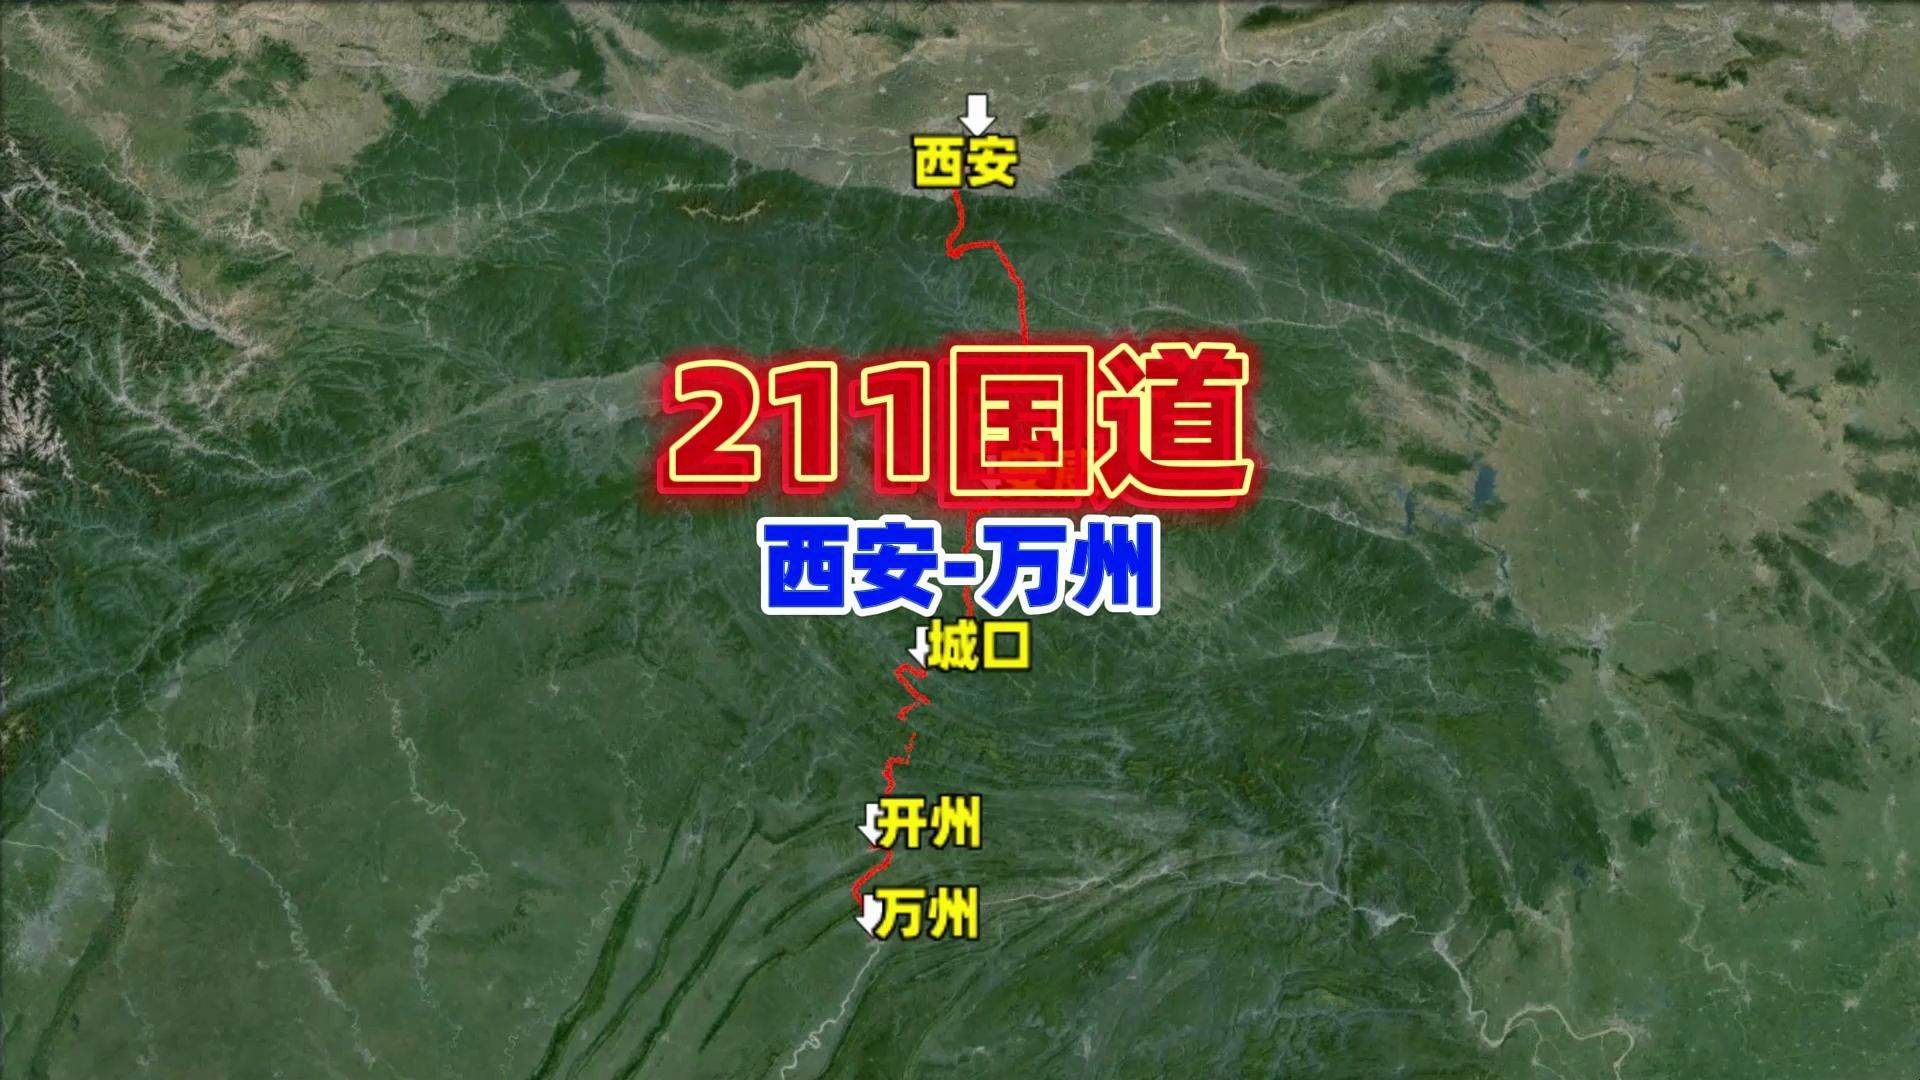 国道211陕西路线图境内图片